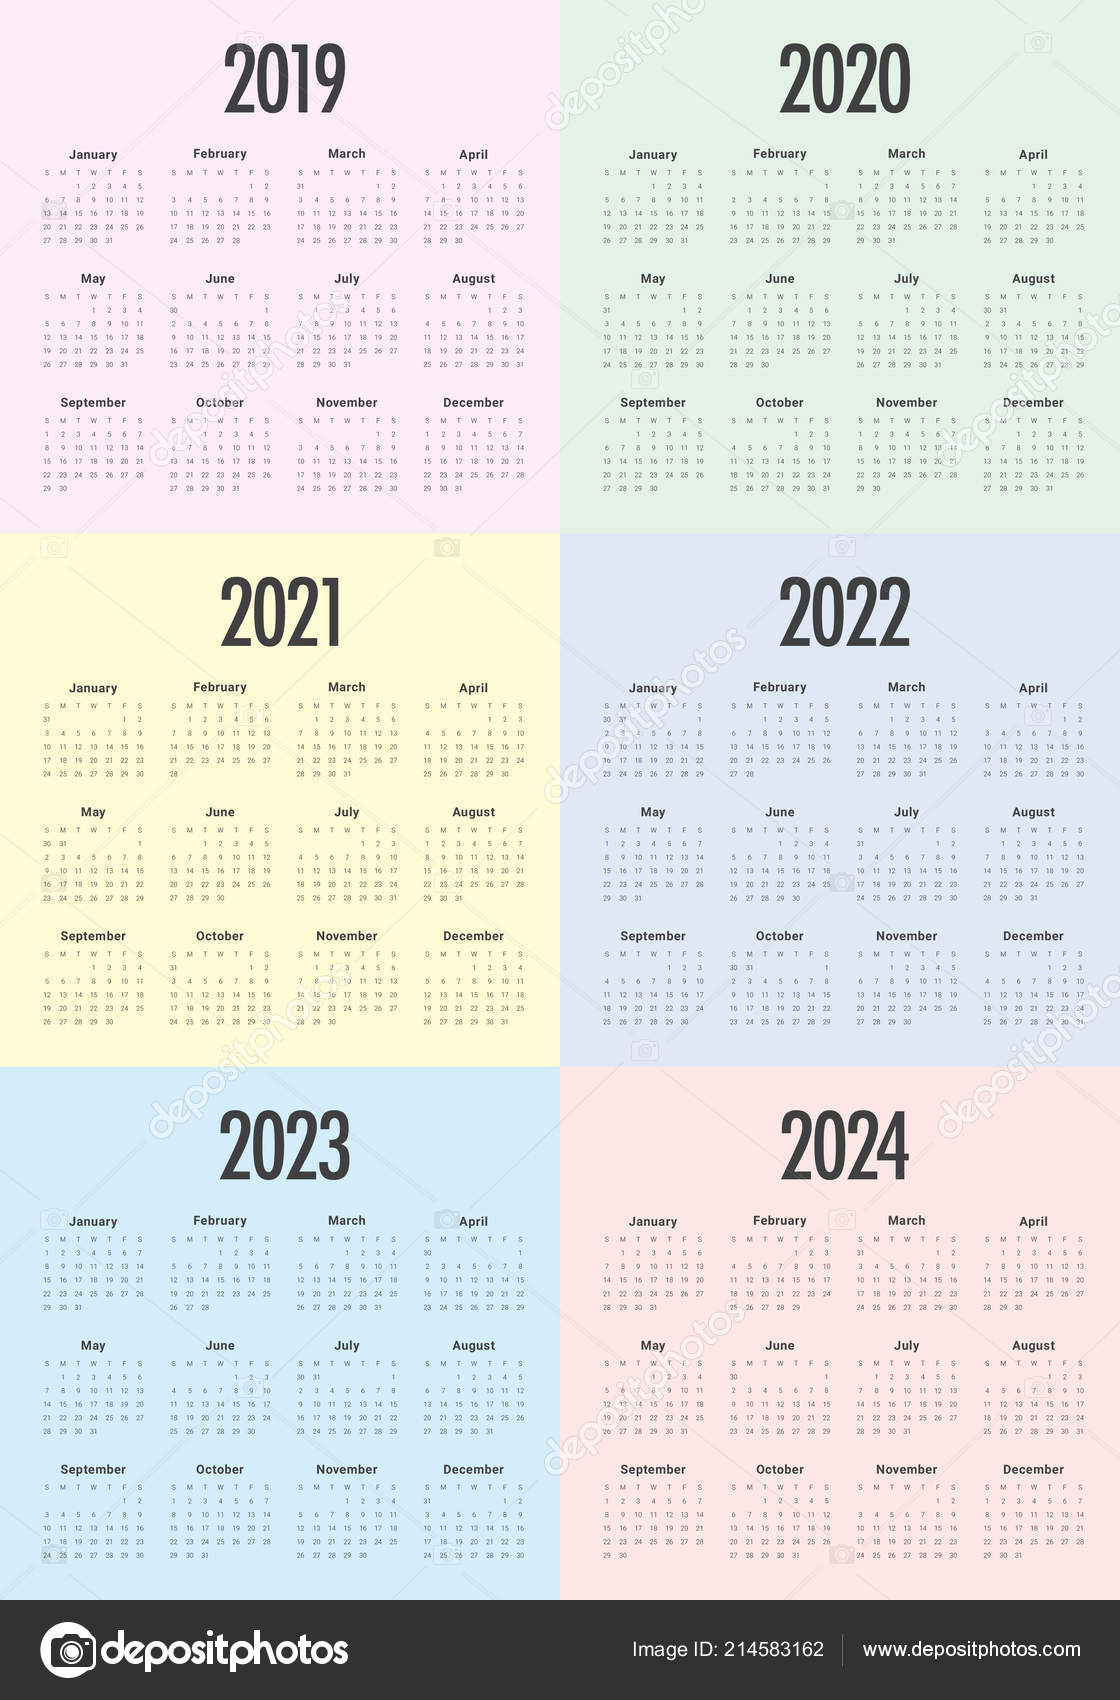 2021 2022 2023 2024